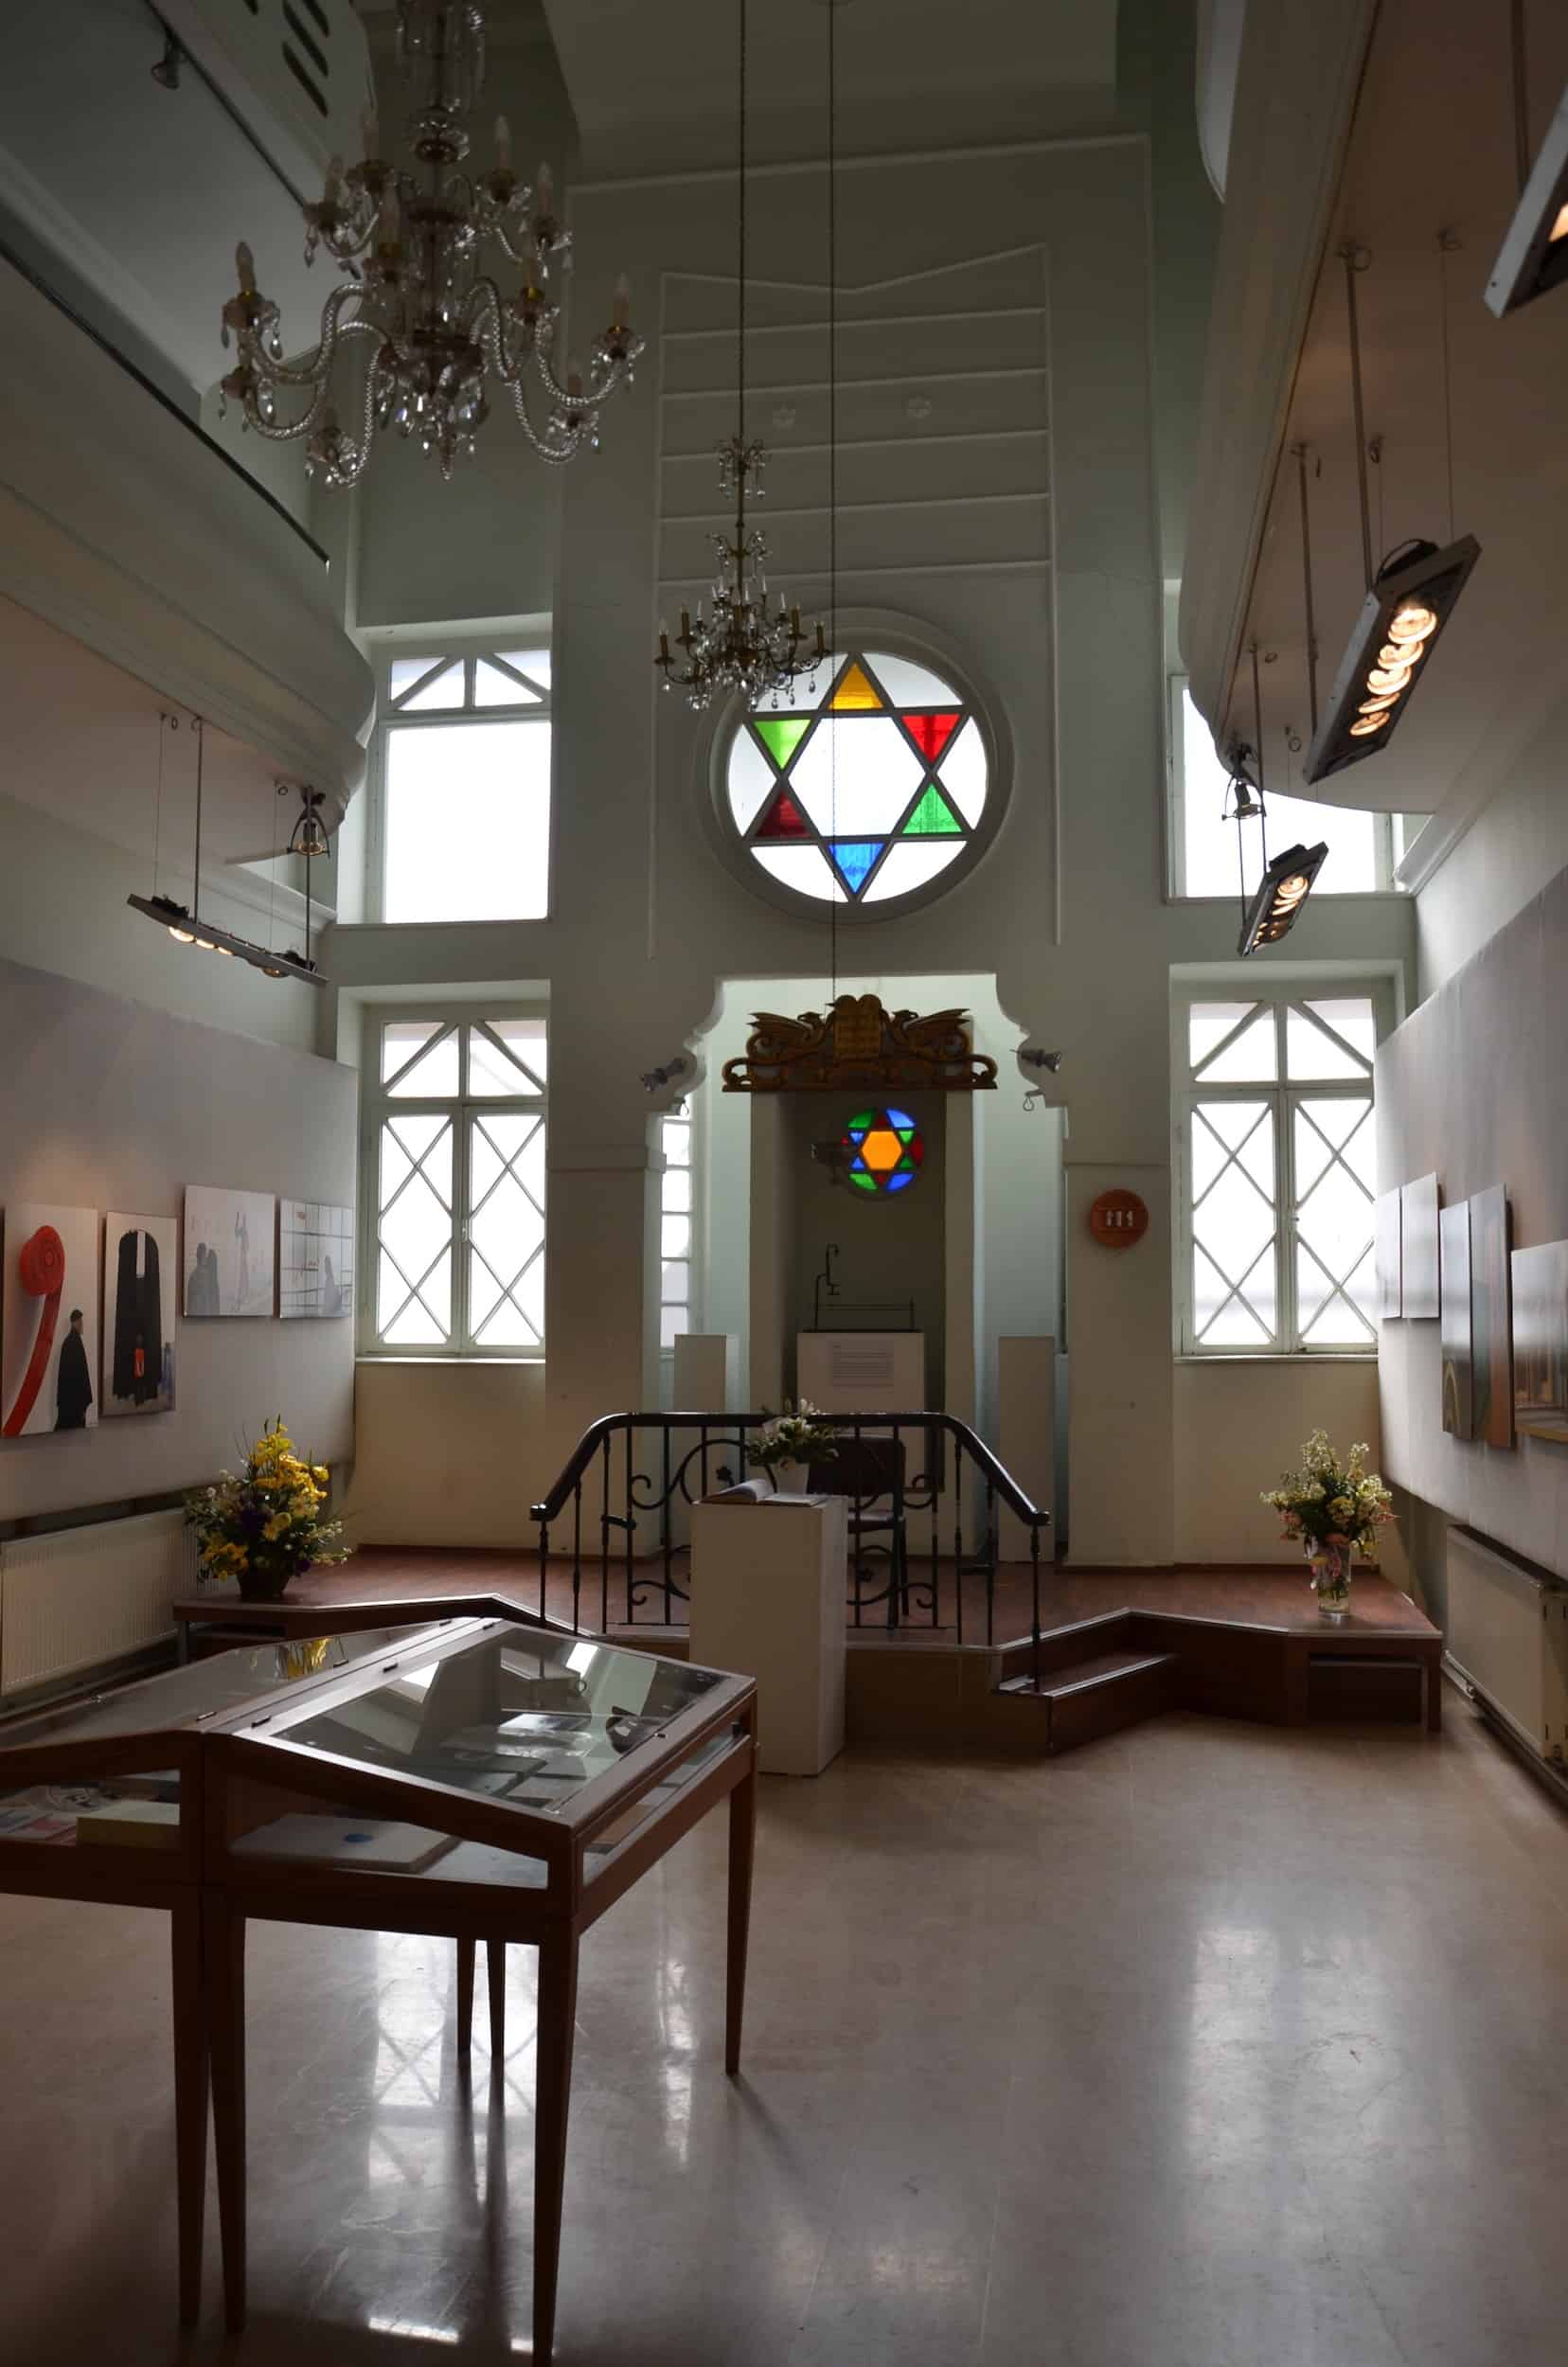 Interior of the Schneider Synagogue in Galata, Istanbul, Turkey